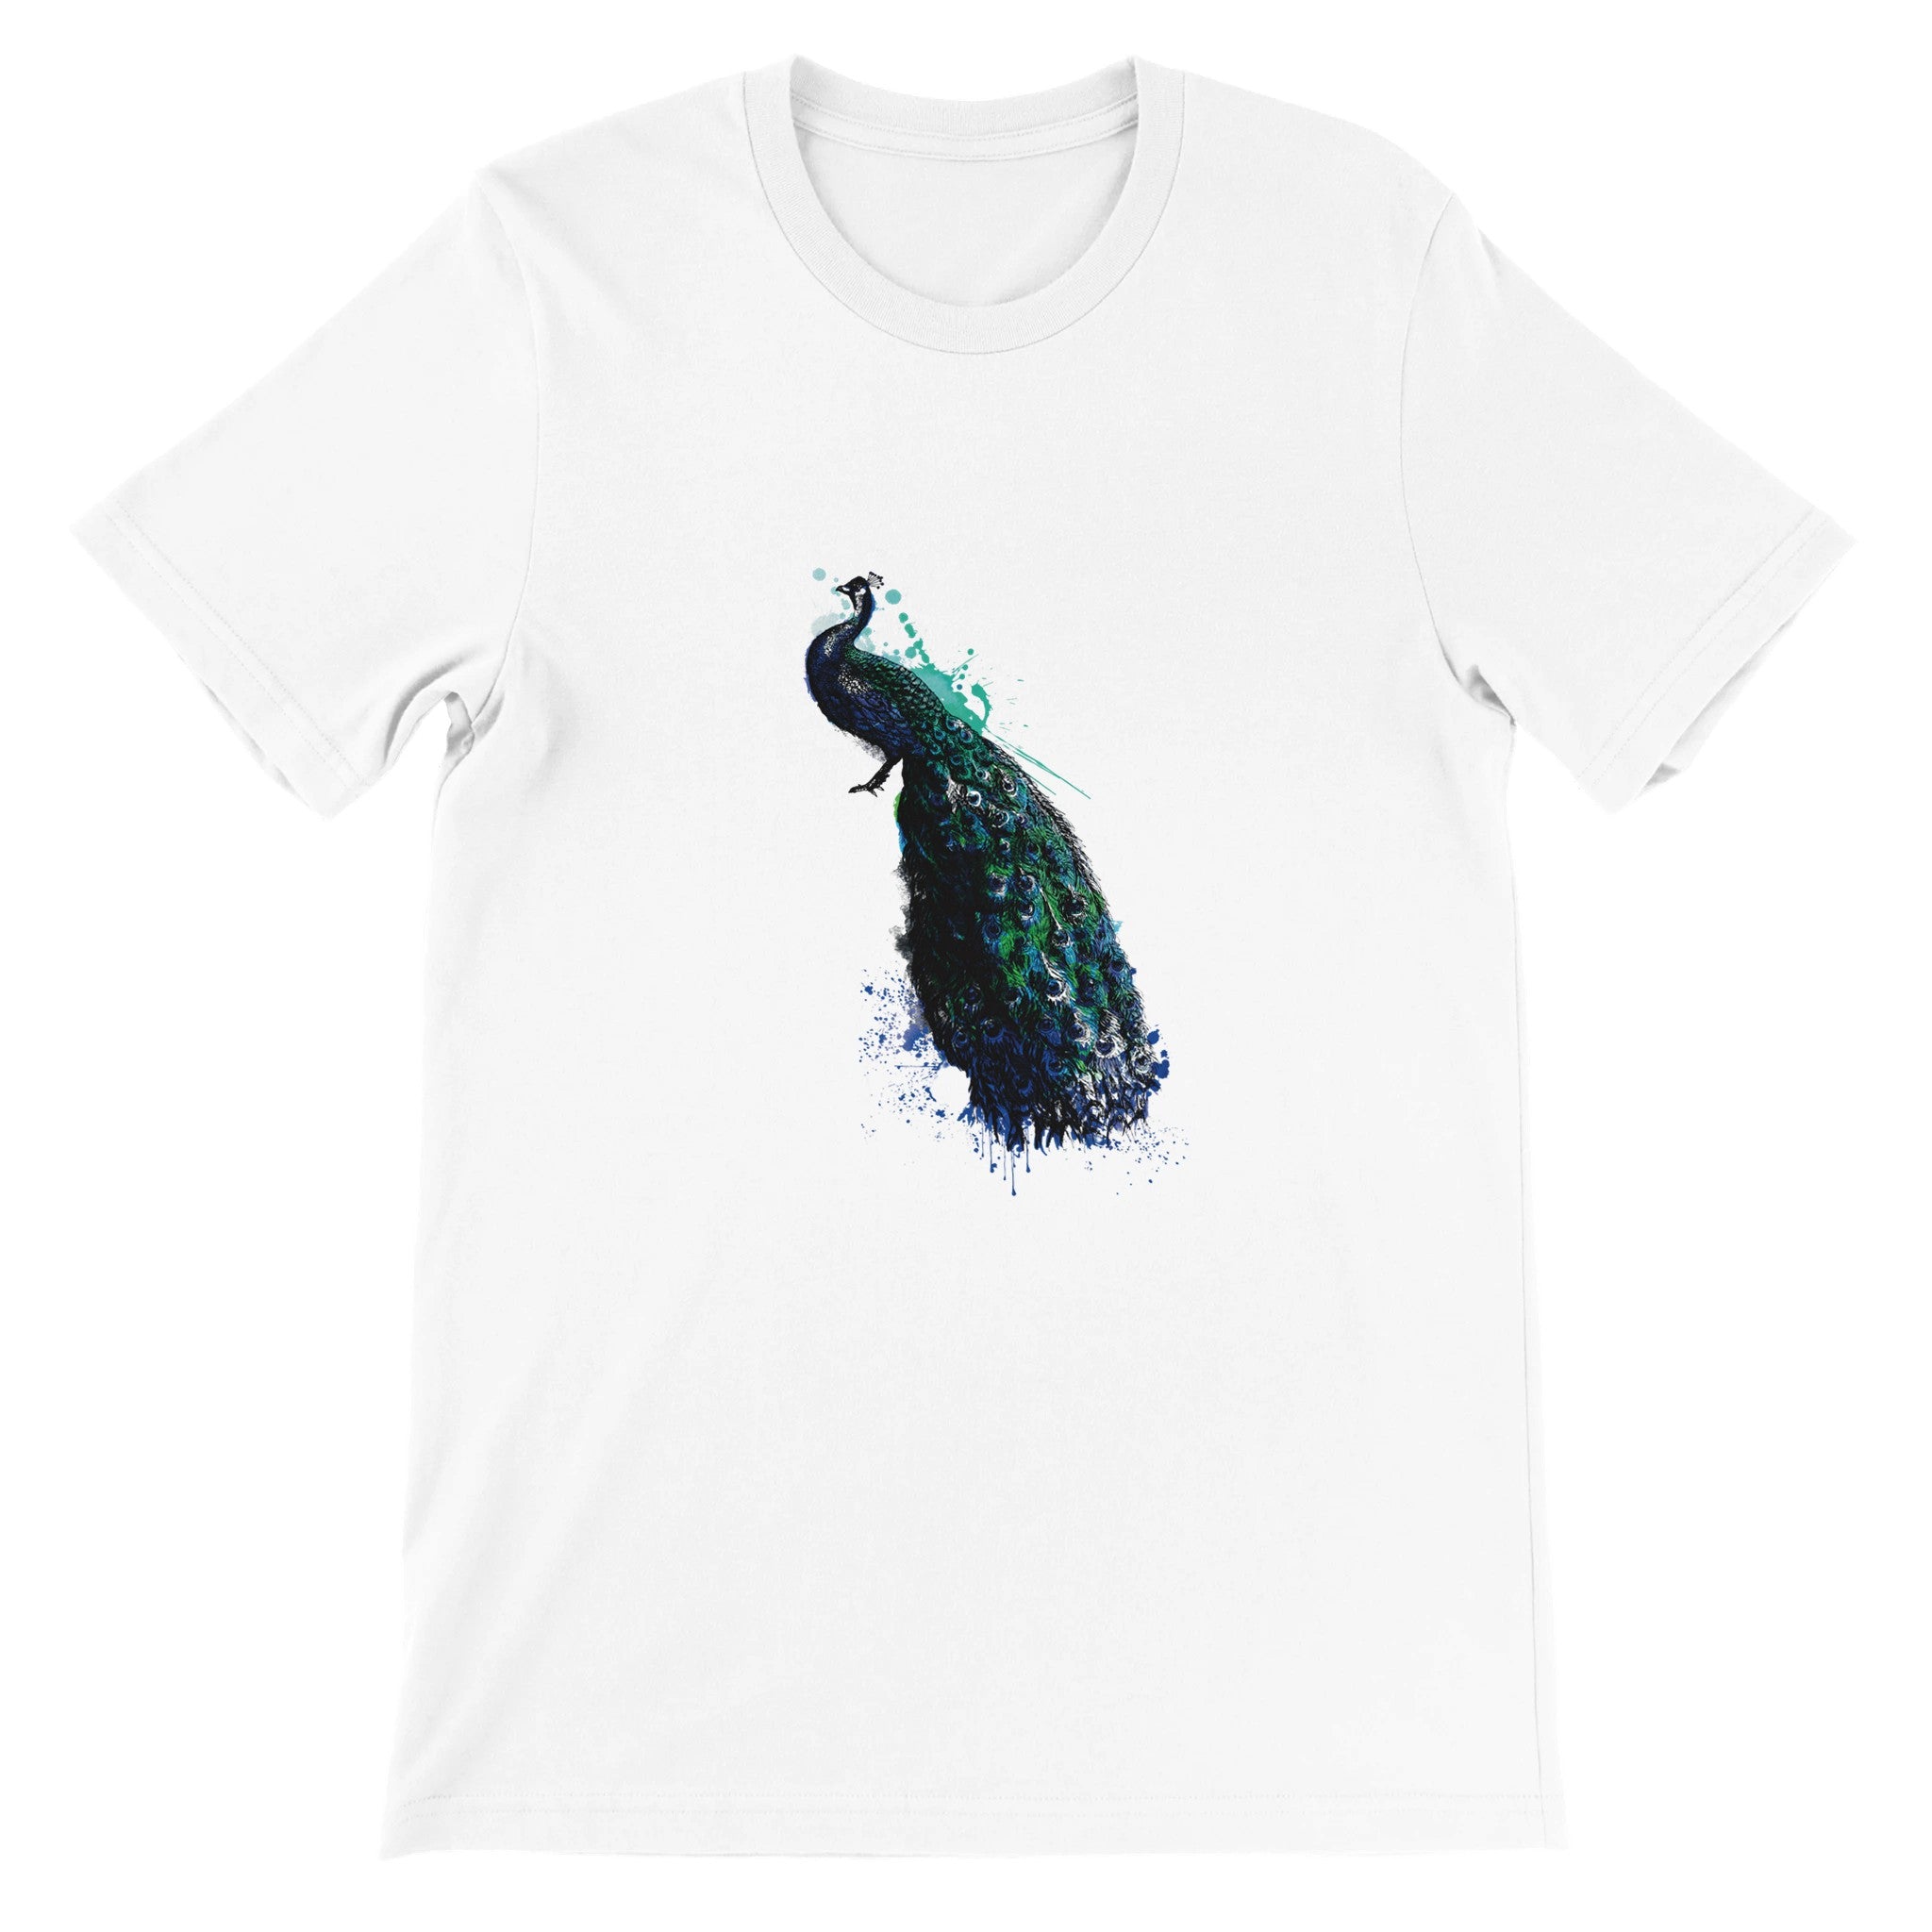 Peacock Illustration Crewneck T-shirt - Optimalprint